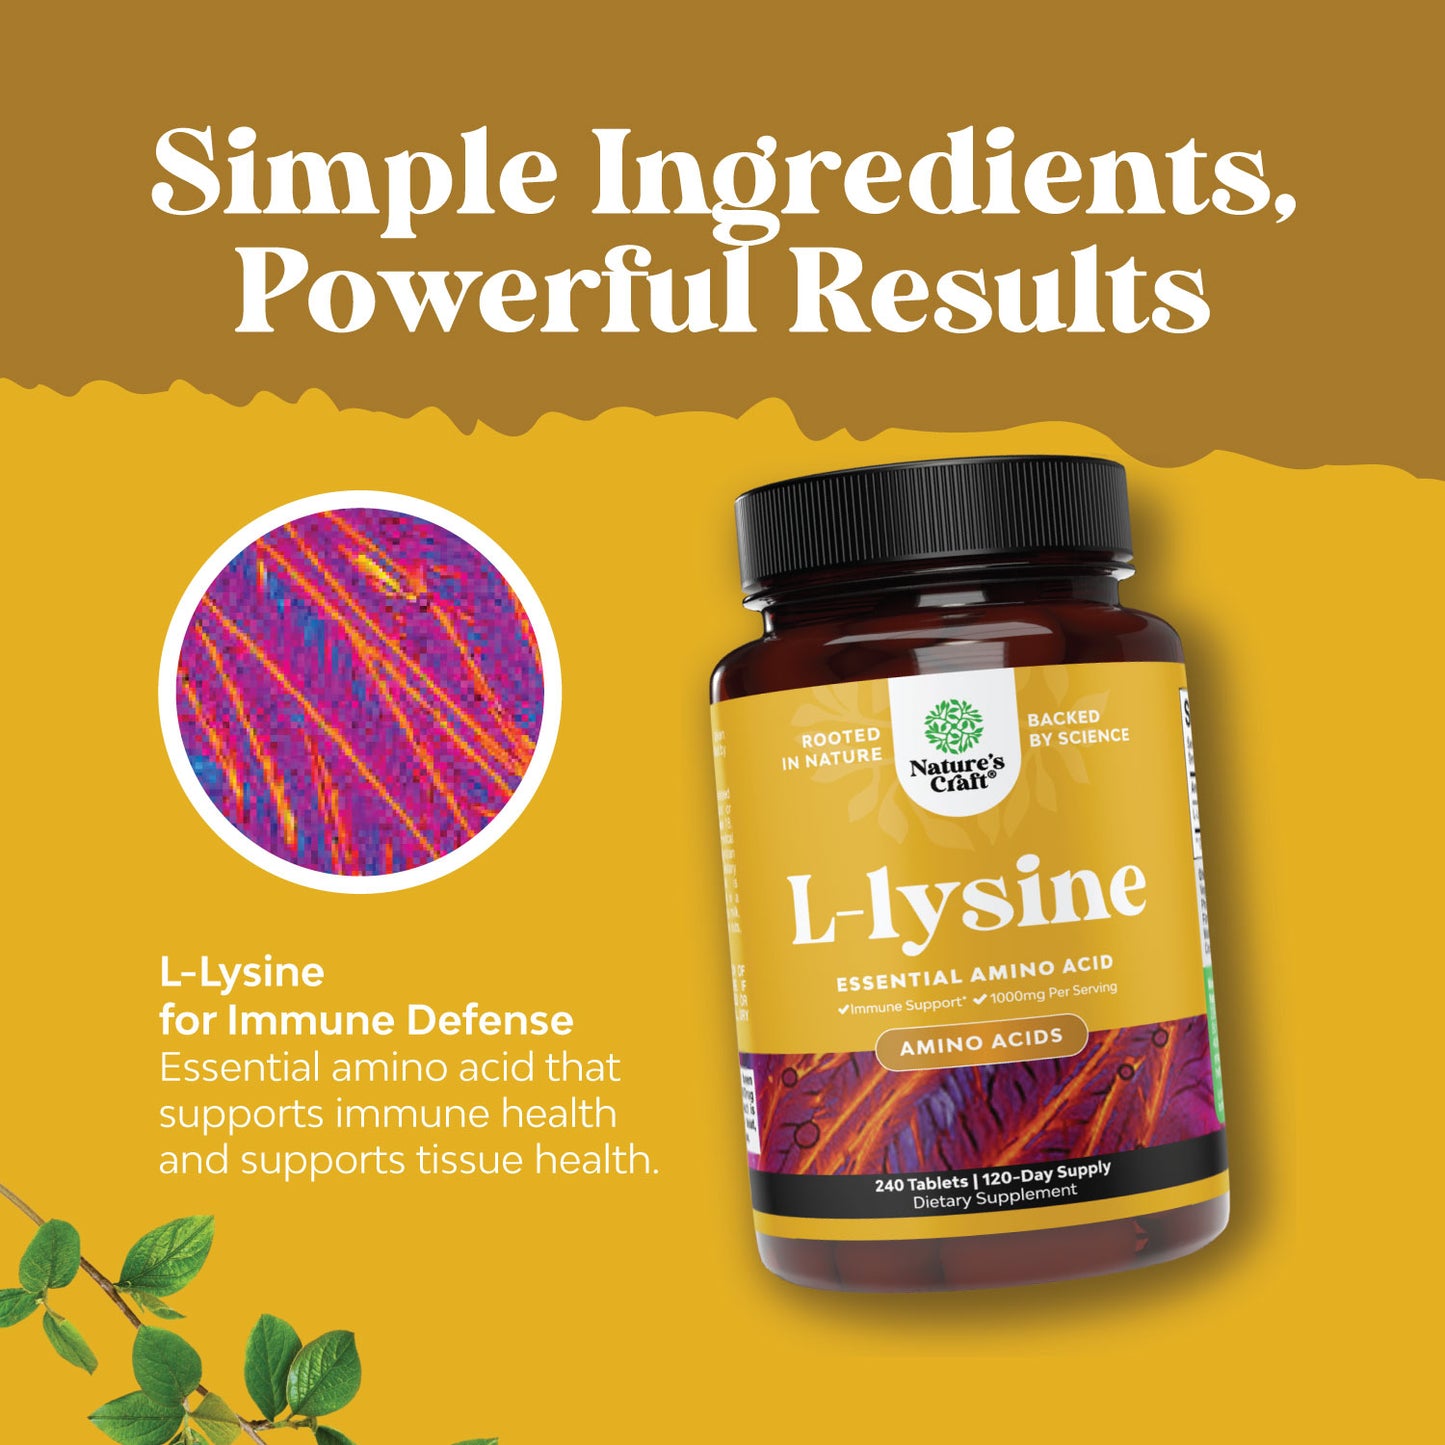 L-Lysine 1000mg per serving - 240 Tablets